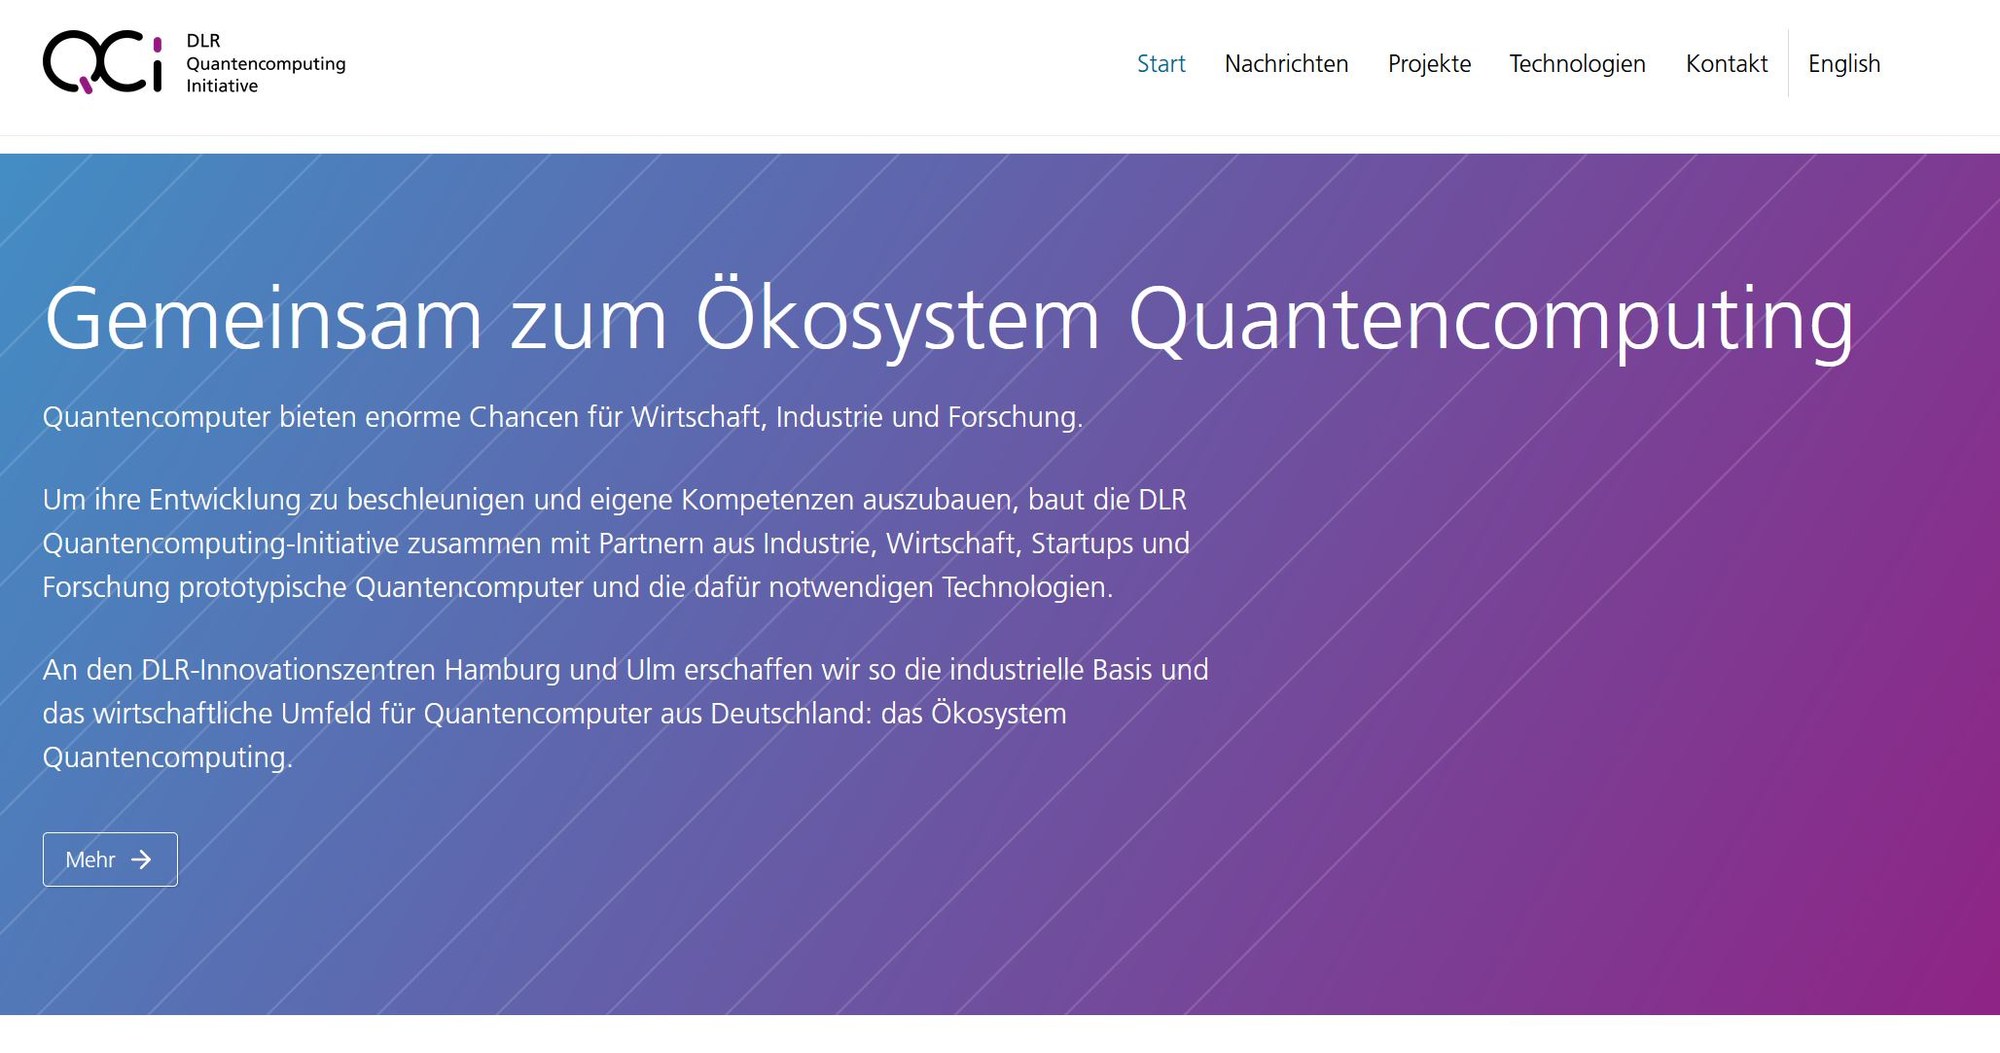 Website: DLR-Quantencomputing-Initiative